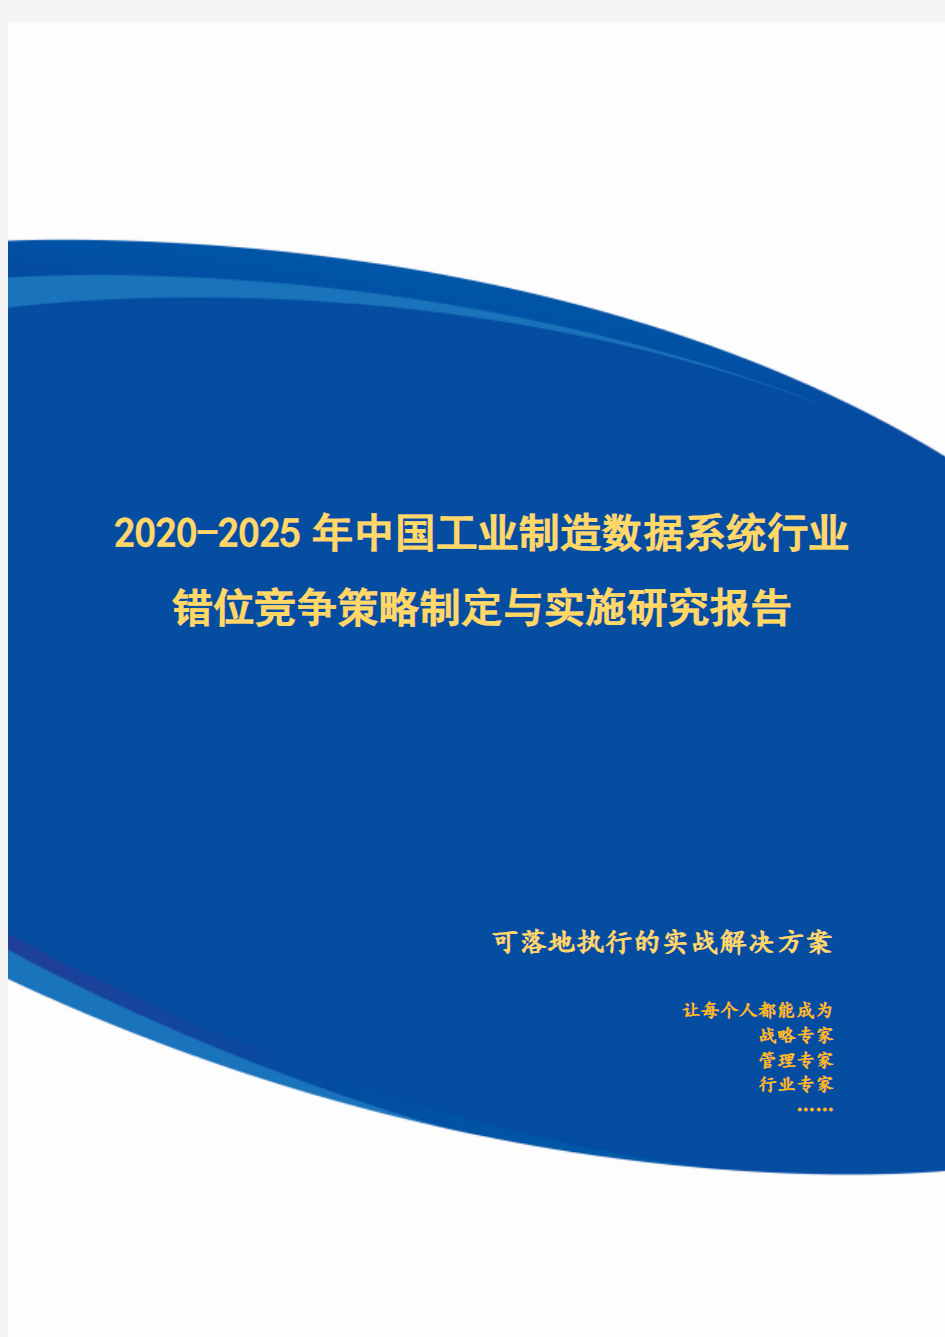 2020-2025年中国工业制造数据系统行业错位竞争策略制定与实施研究报告